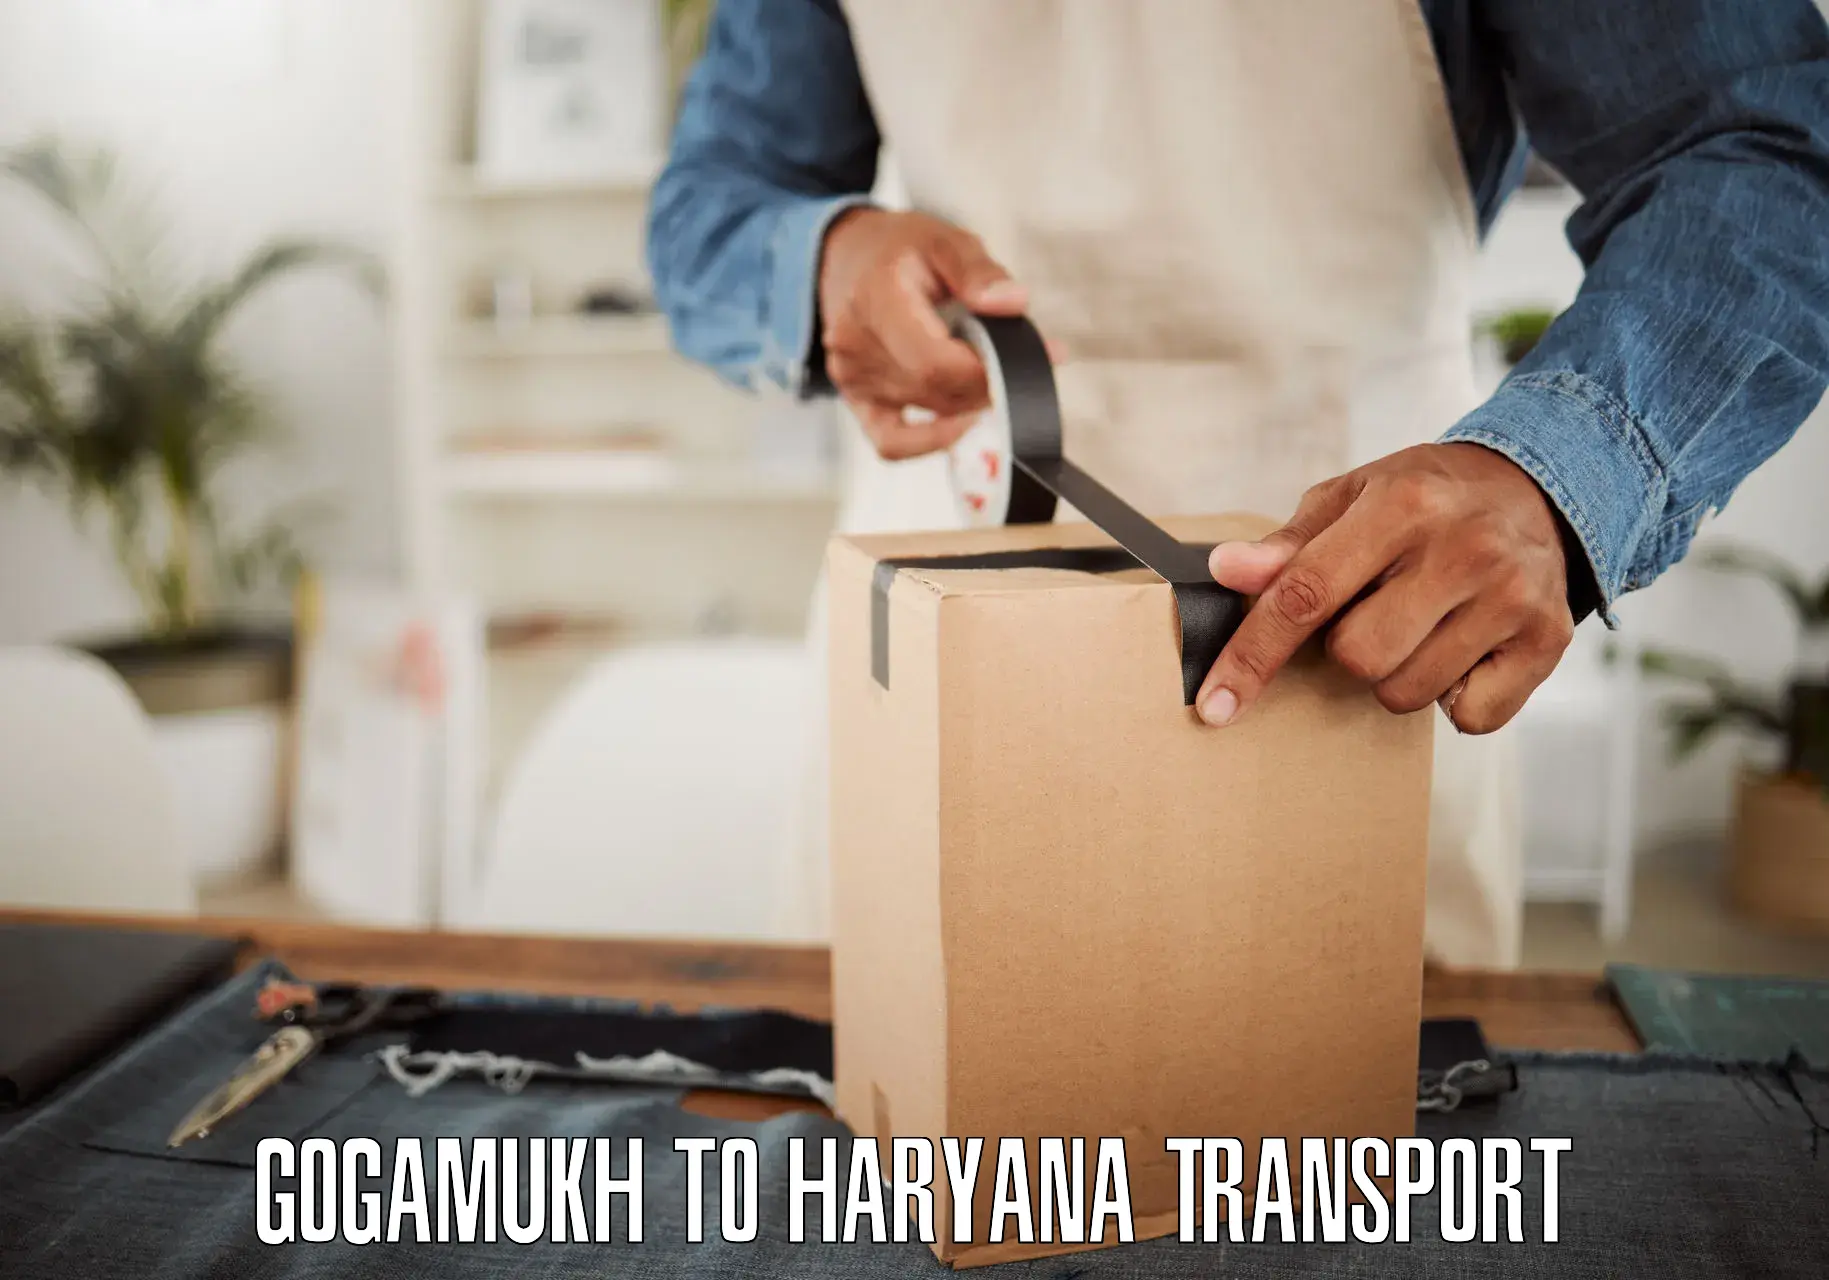 Cargo transport services Gogamukh to Kurukshetra University